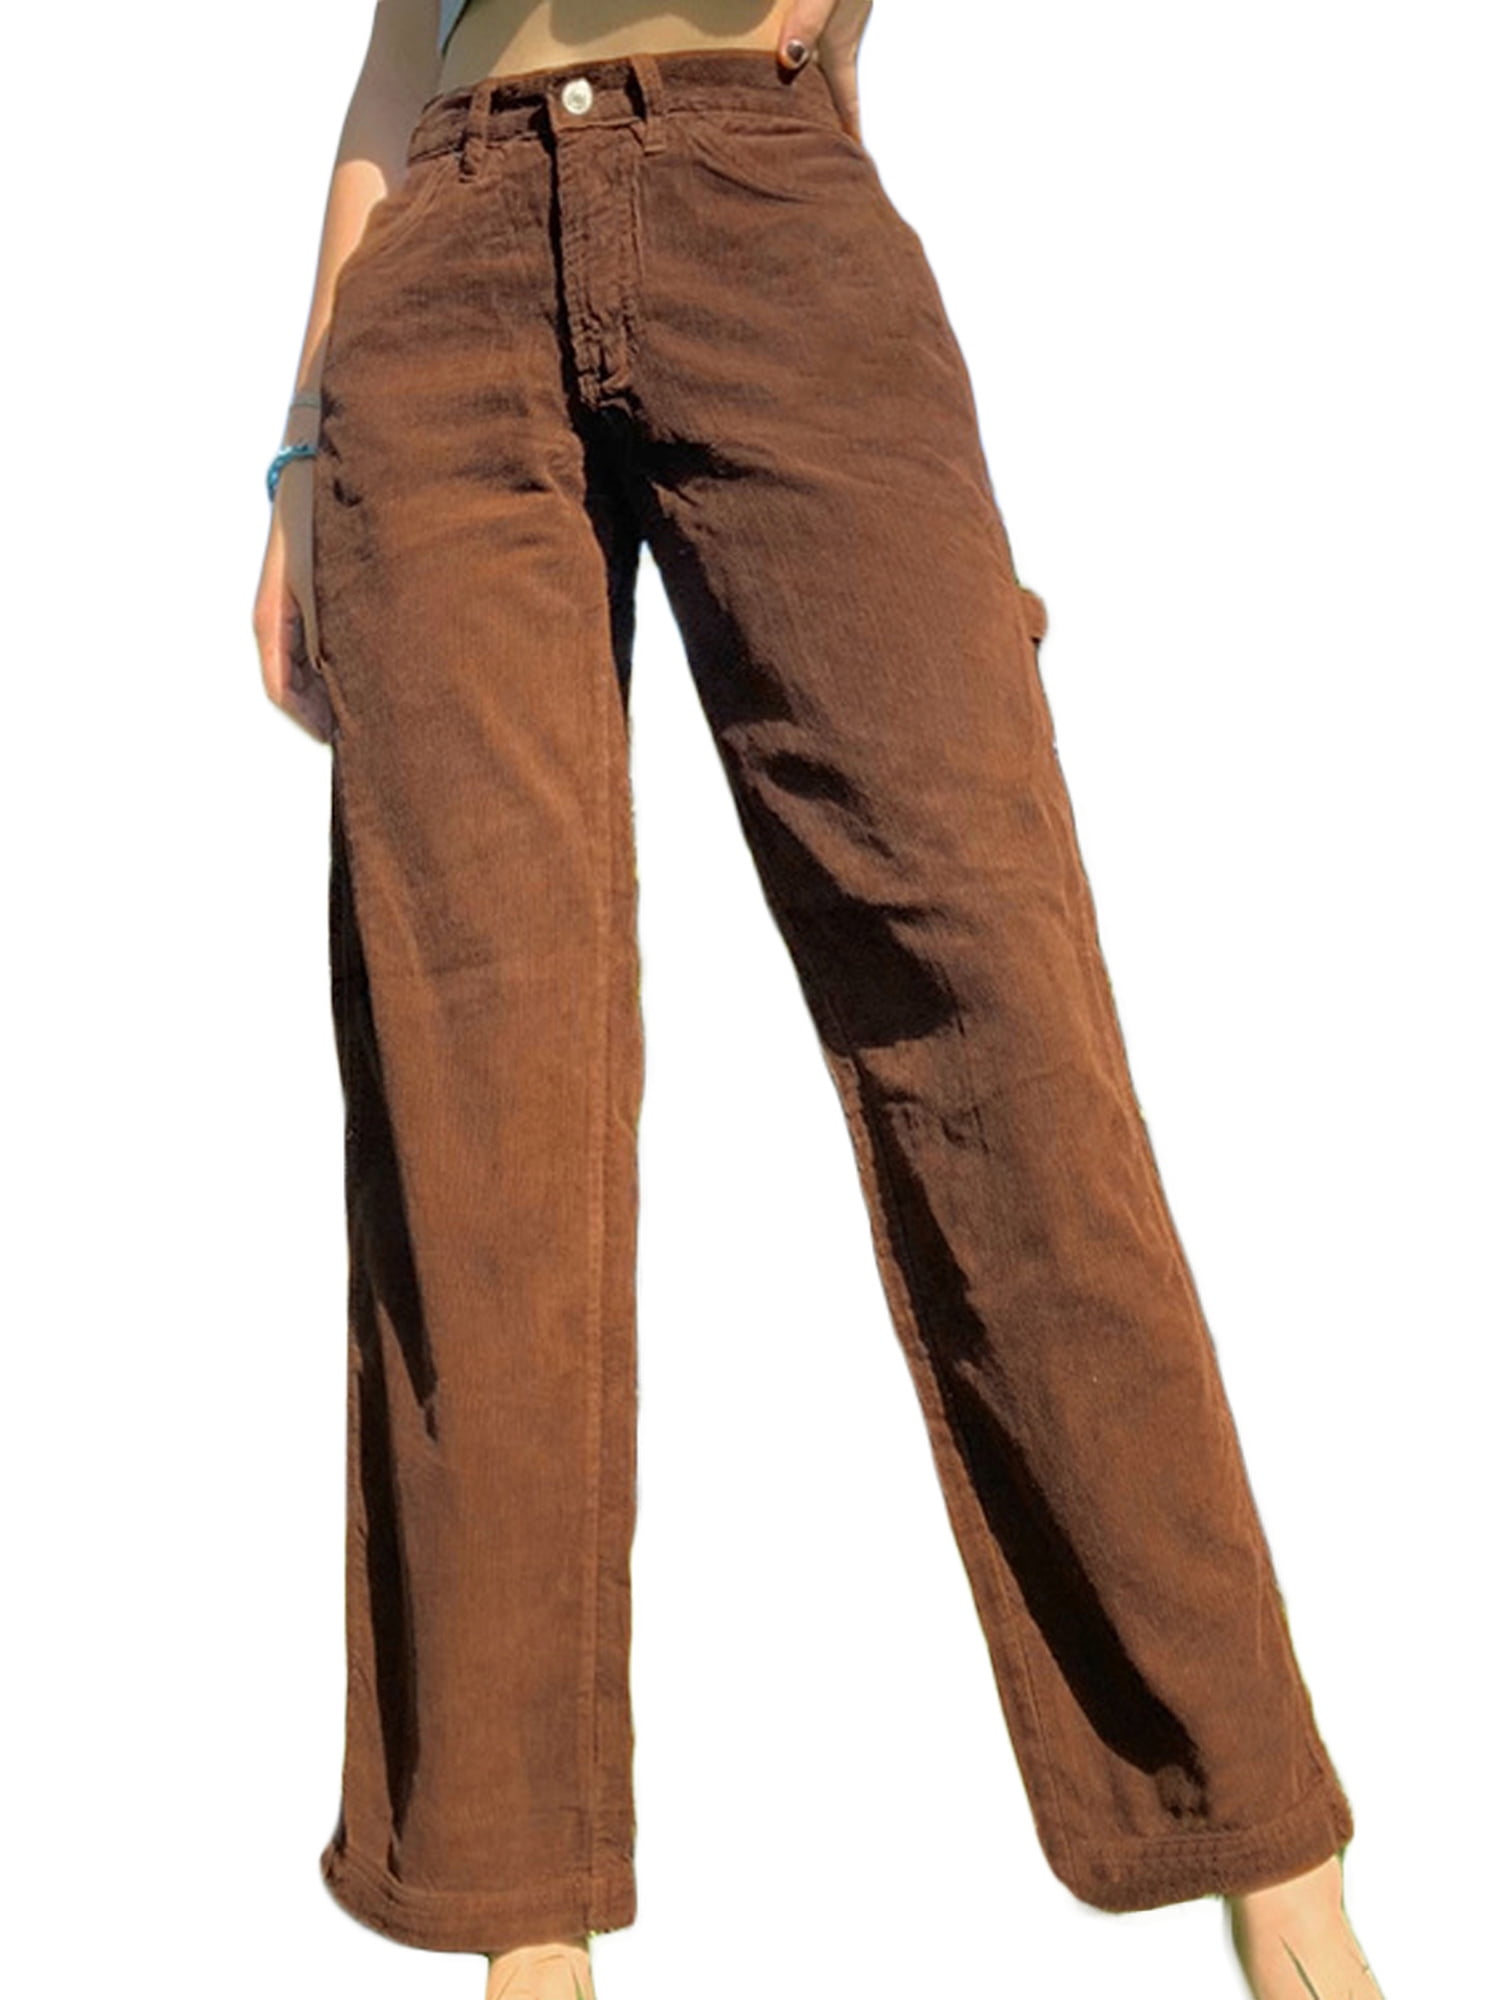 Retro Women's Pants Vintage High Waist Trousers Khaki Pants Vintage Brown Corduroy Pants High waisted Linen Trousers